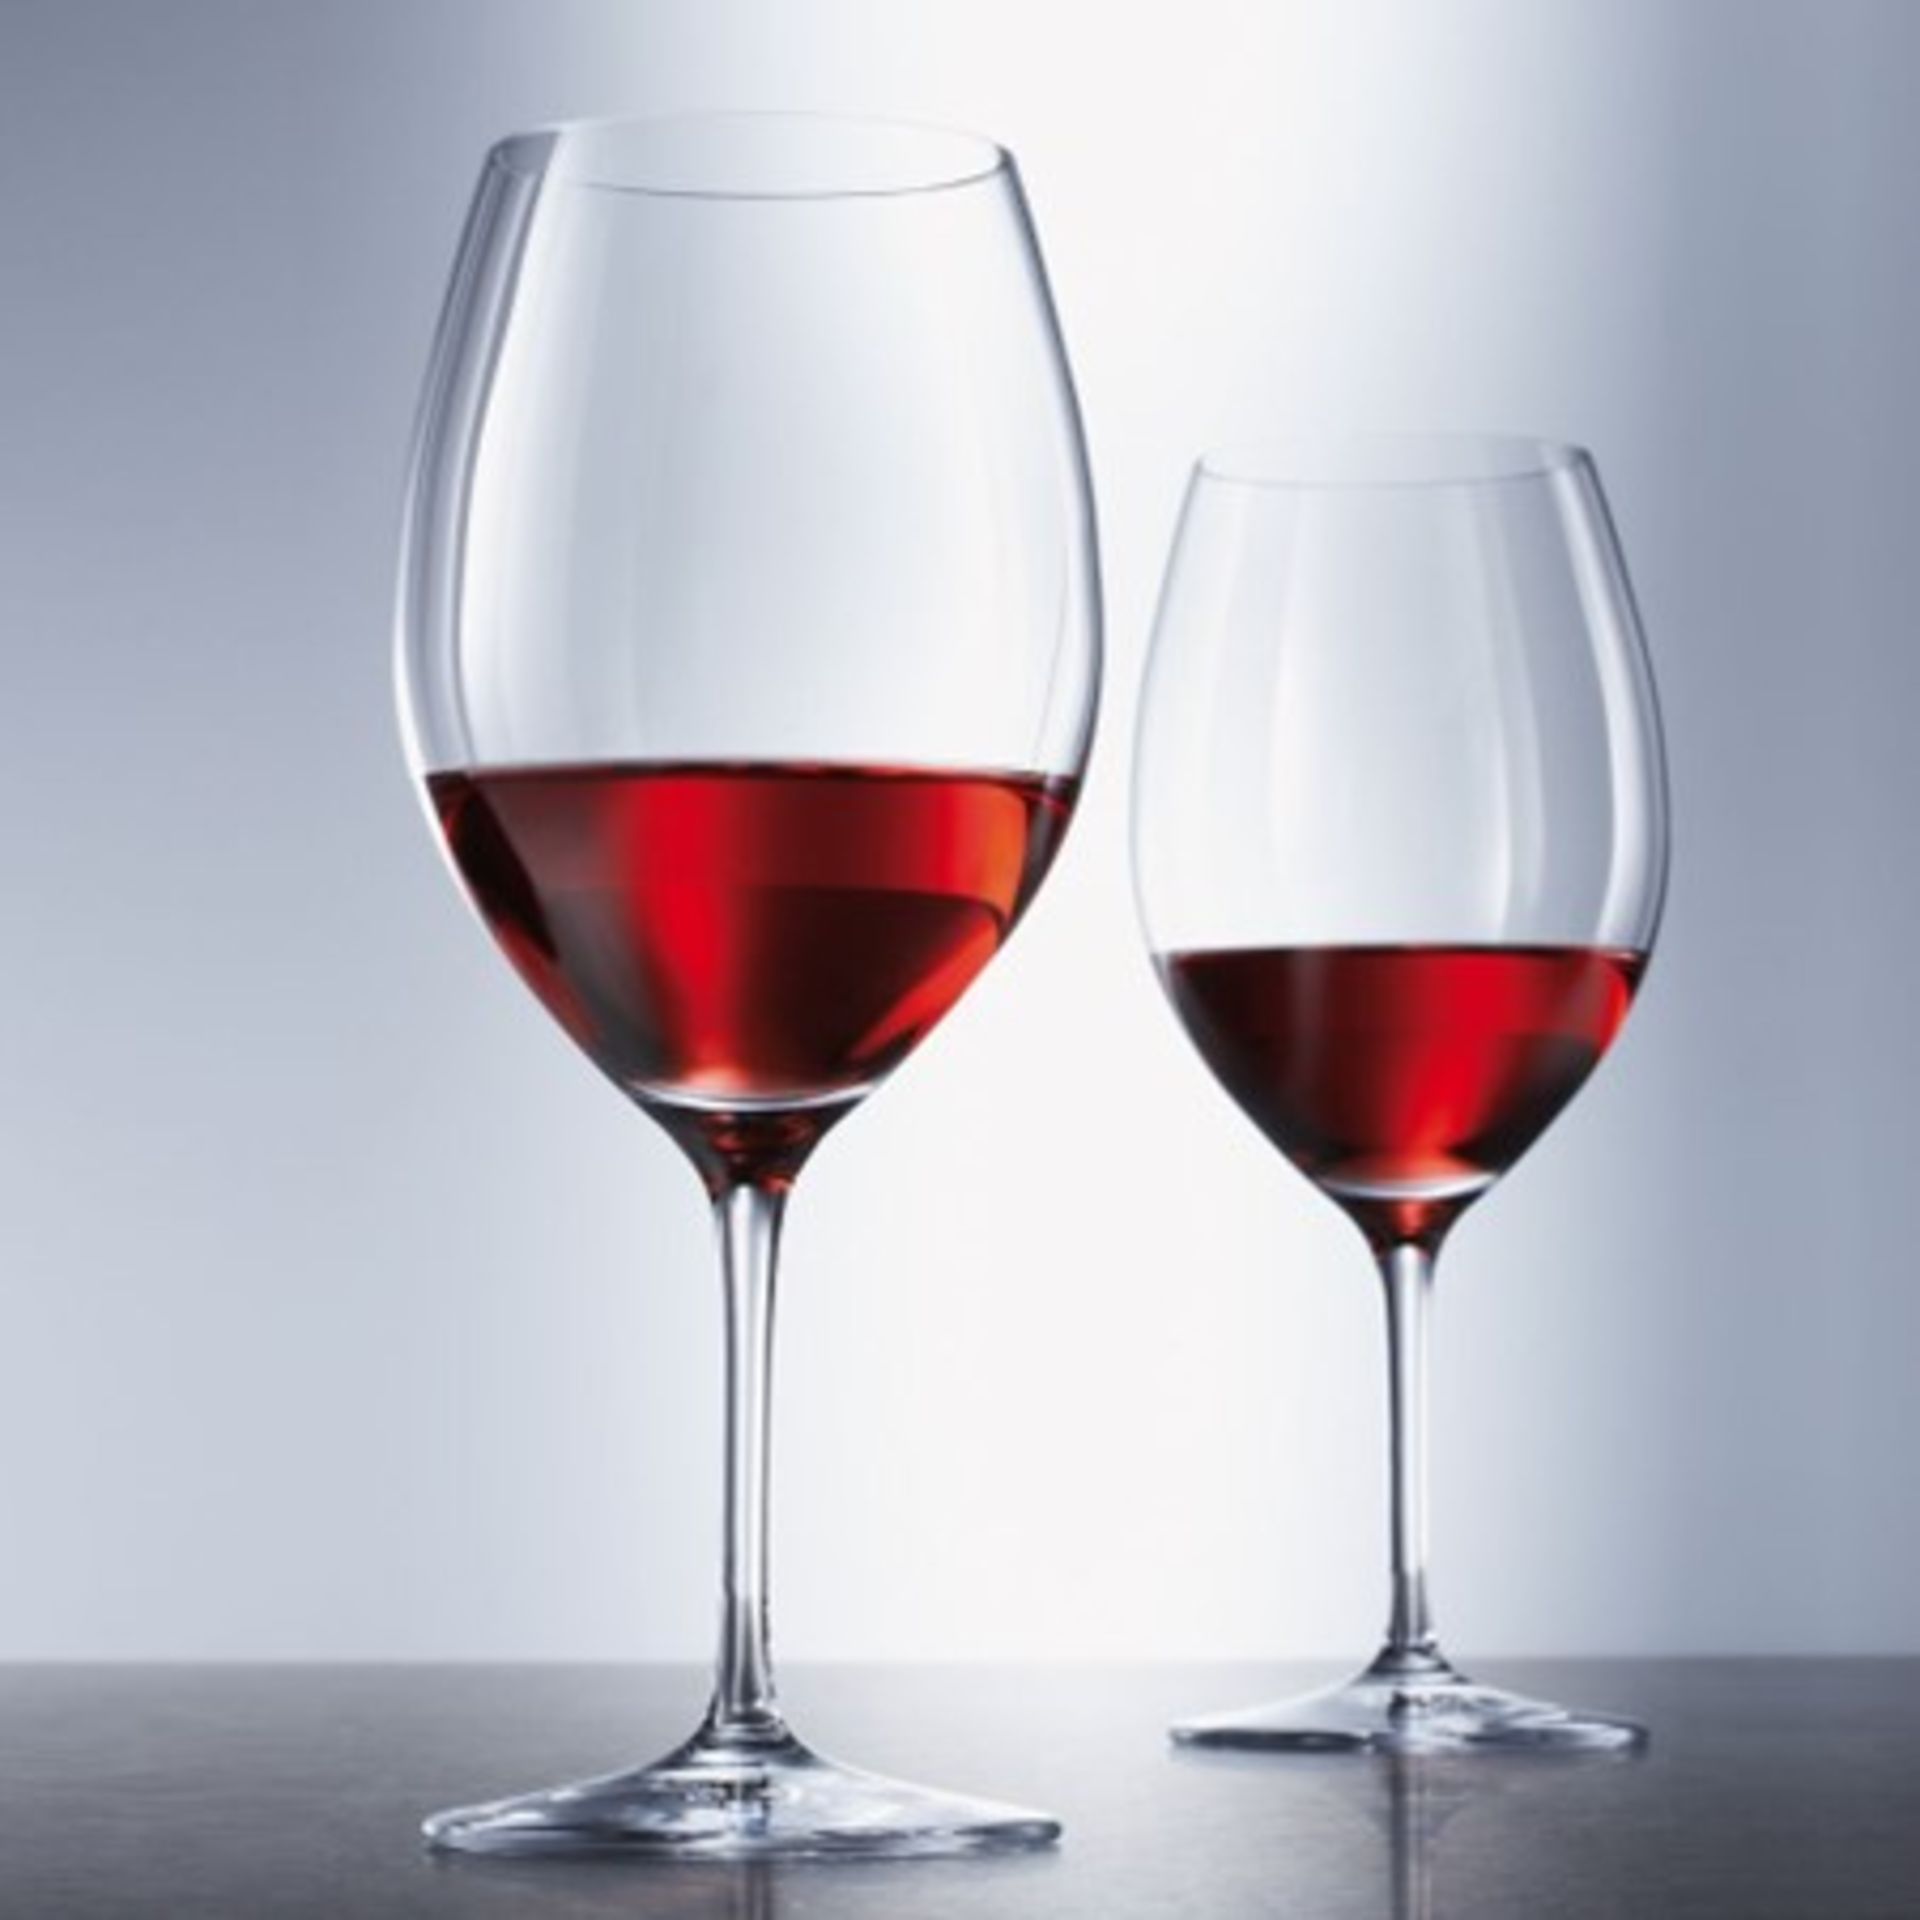 New x2 Schott Zwiesel Cru Classic Red Wine Glasses